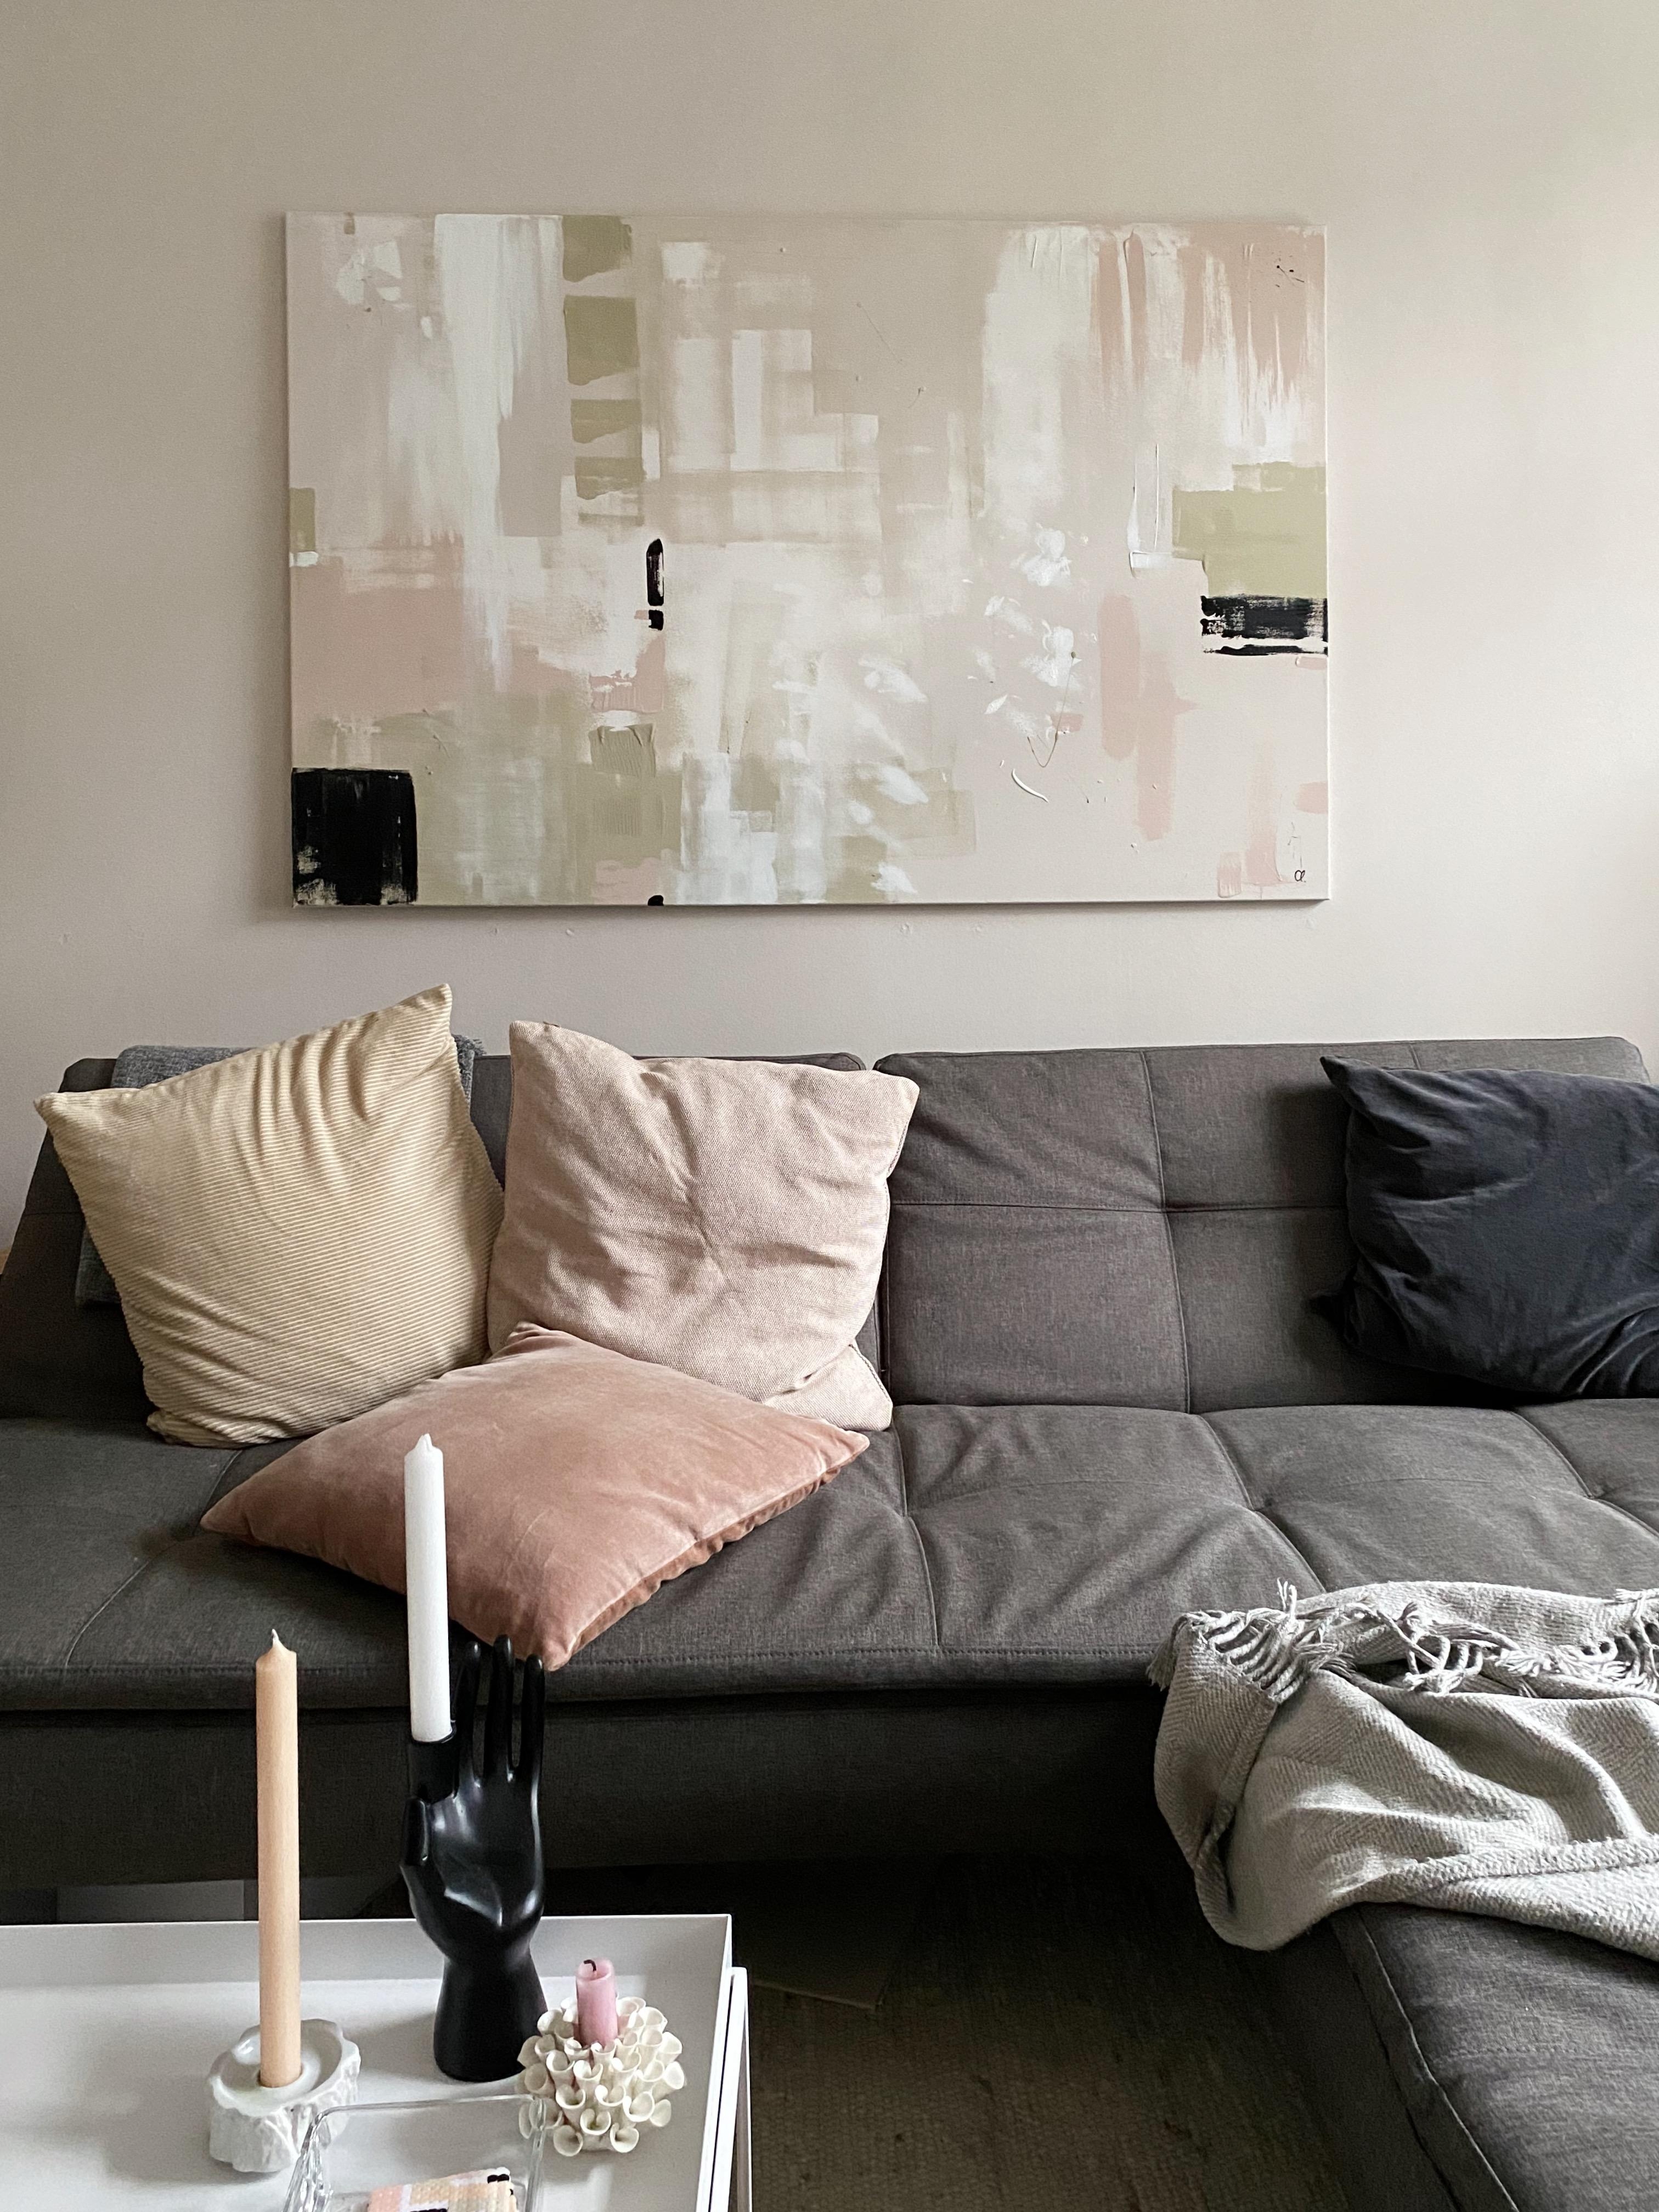 Kunst selbst machen: Wandfarbe auf Leinwand. #interior #solebich #couchliebt #couchstyle